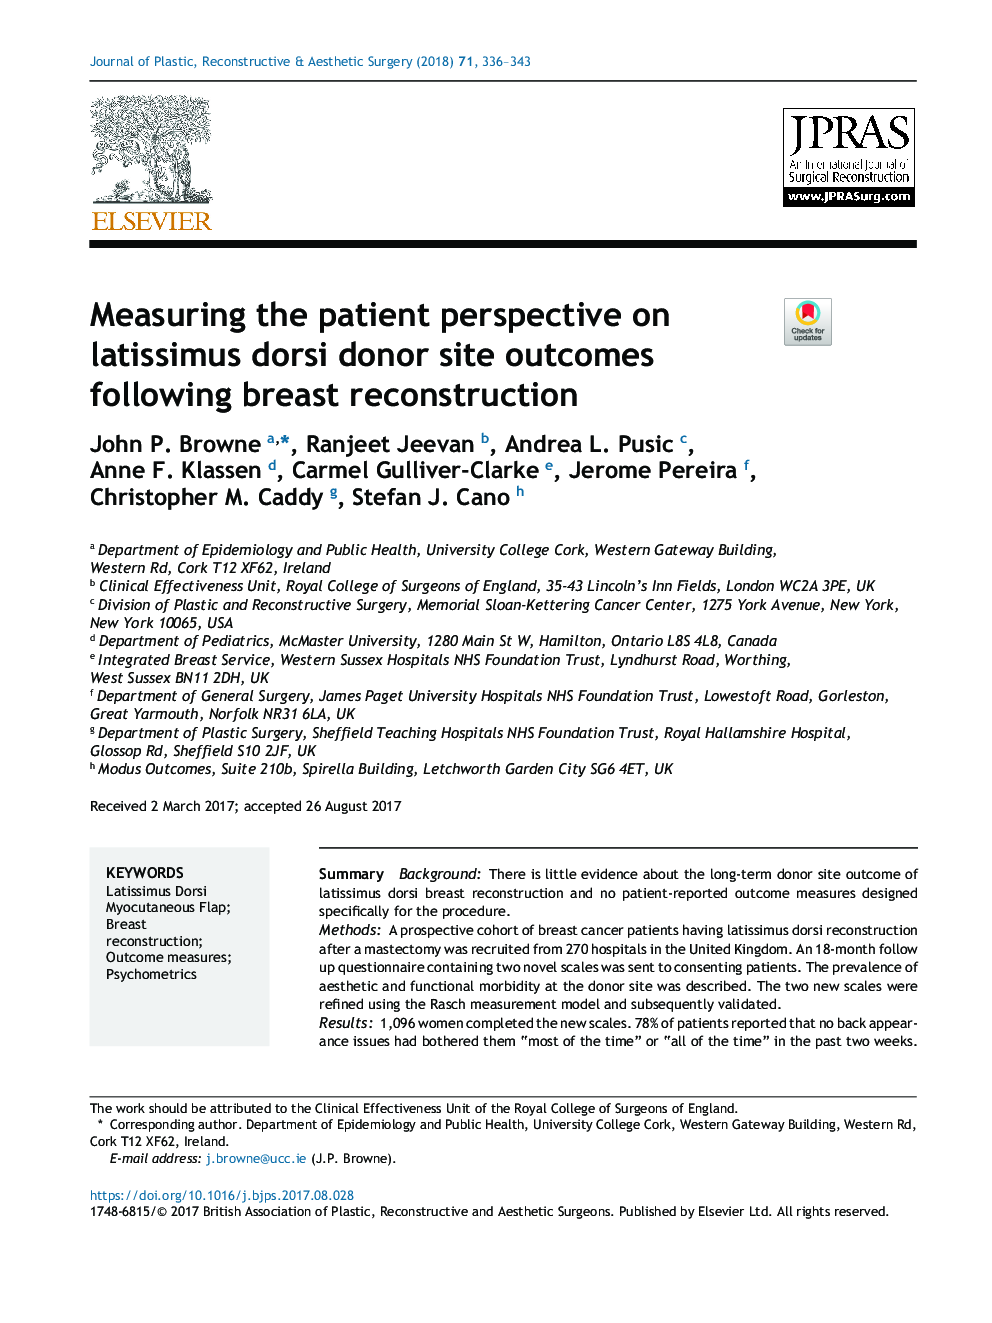 اندازه گیری چشم انداز بیمار در نتایج لکه های خلفی لاتسیسموس دوری پس از بازسازی پستان 